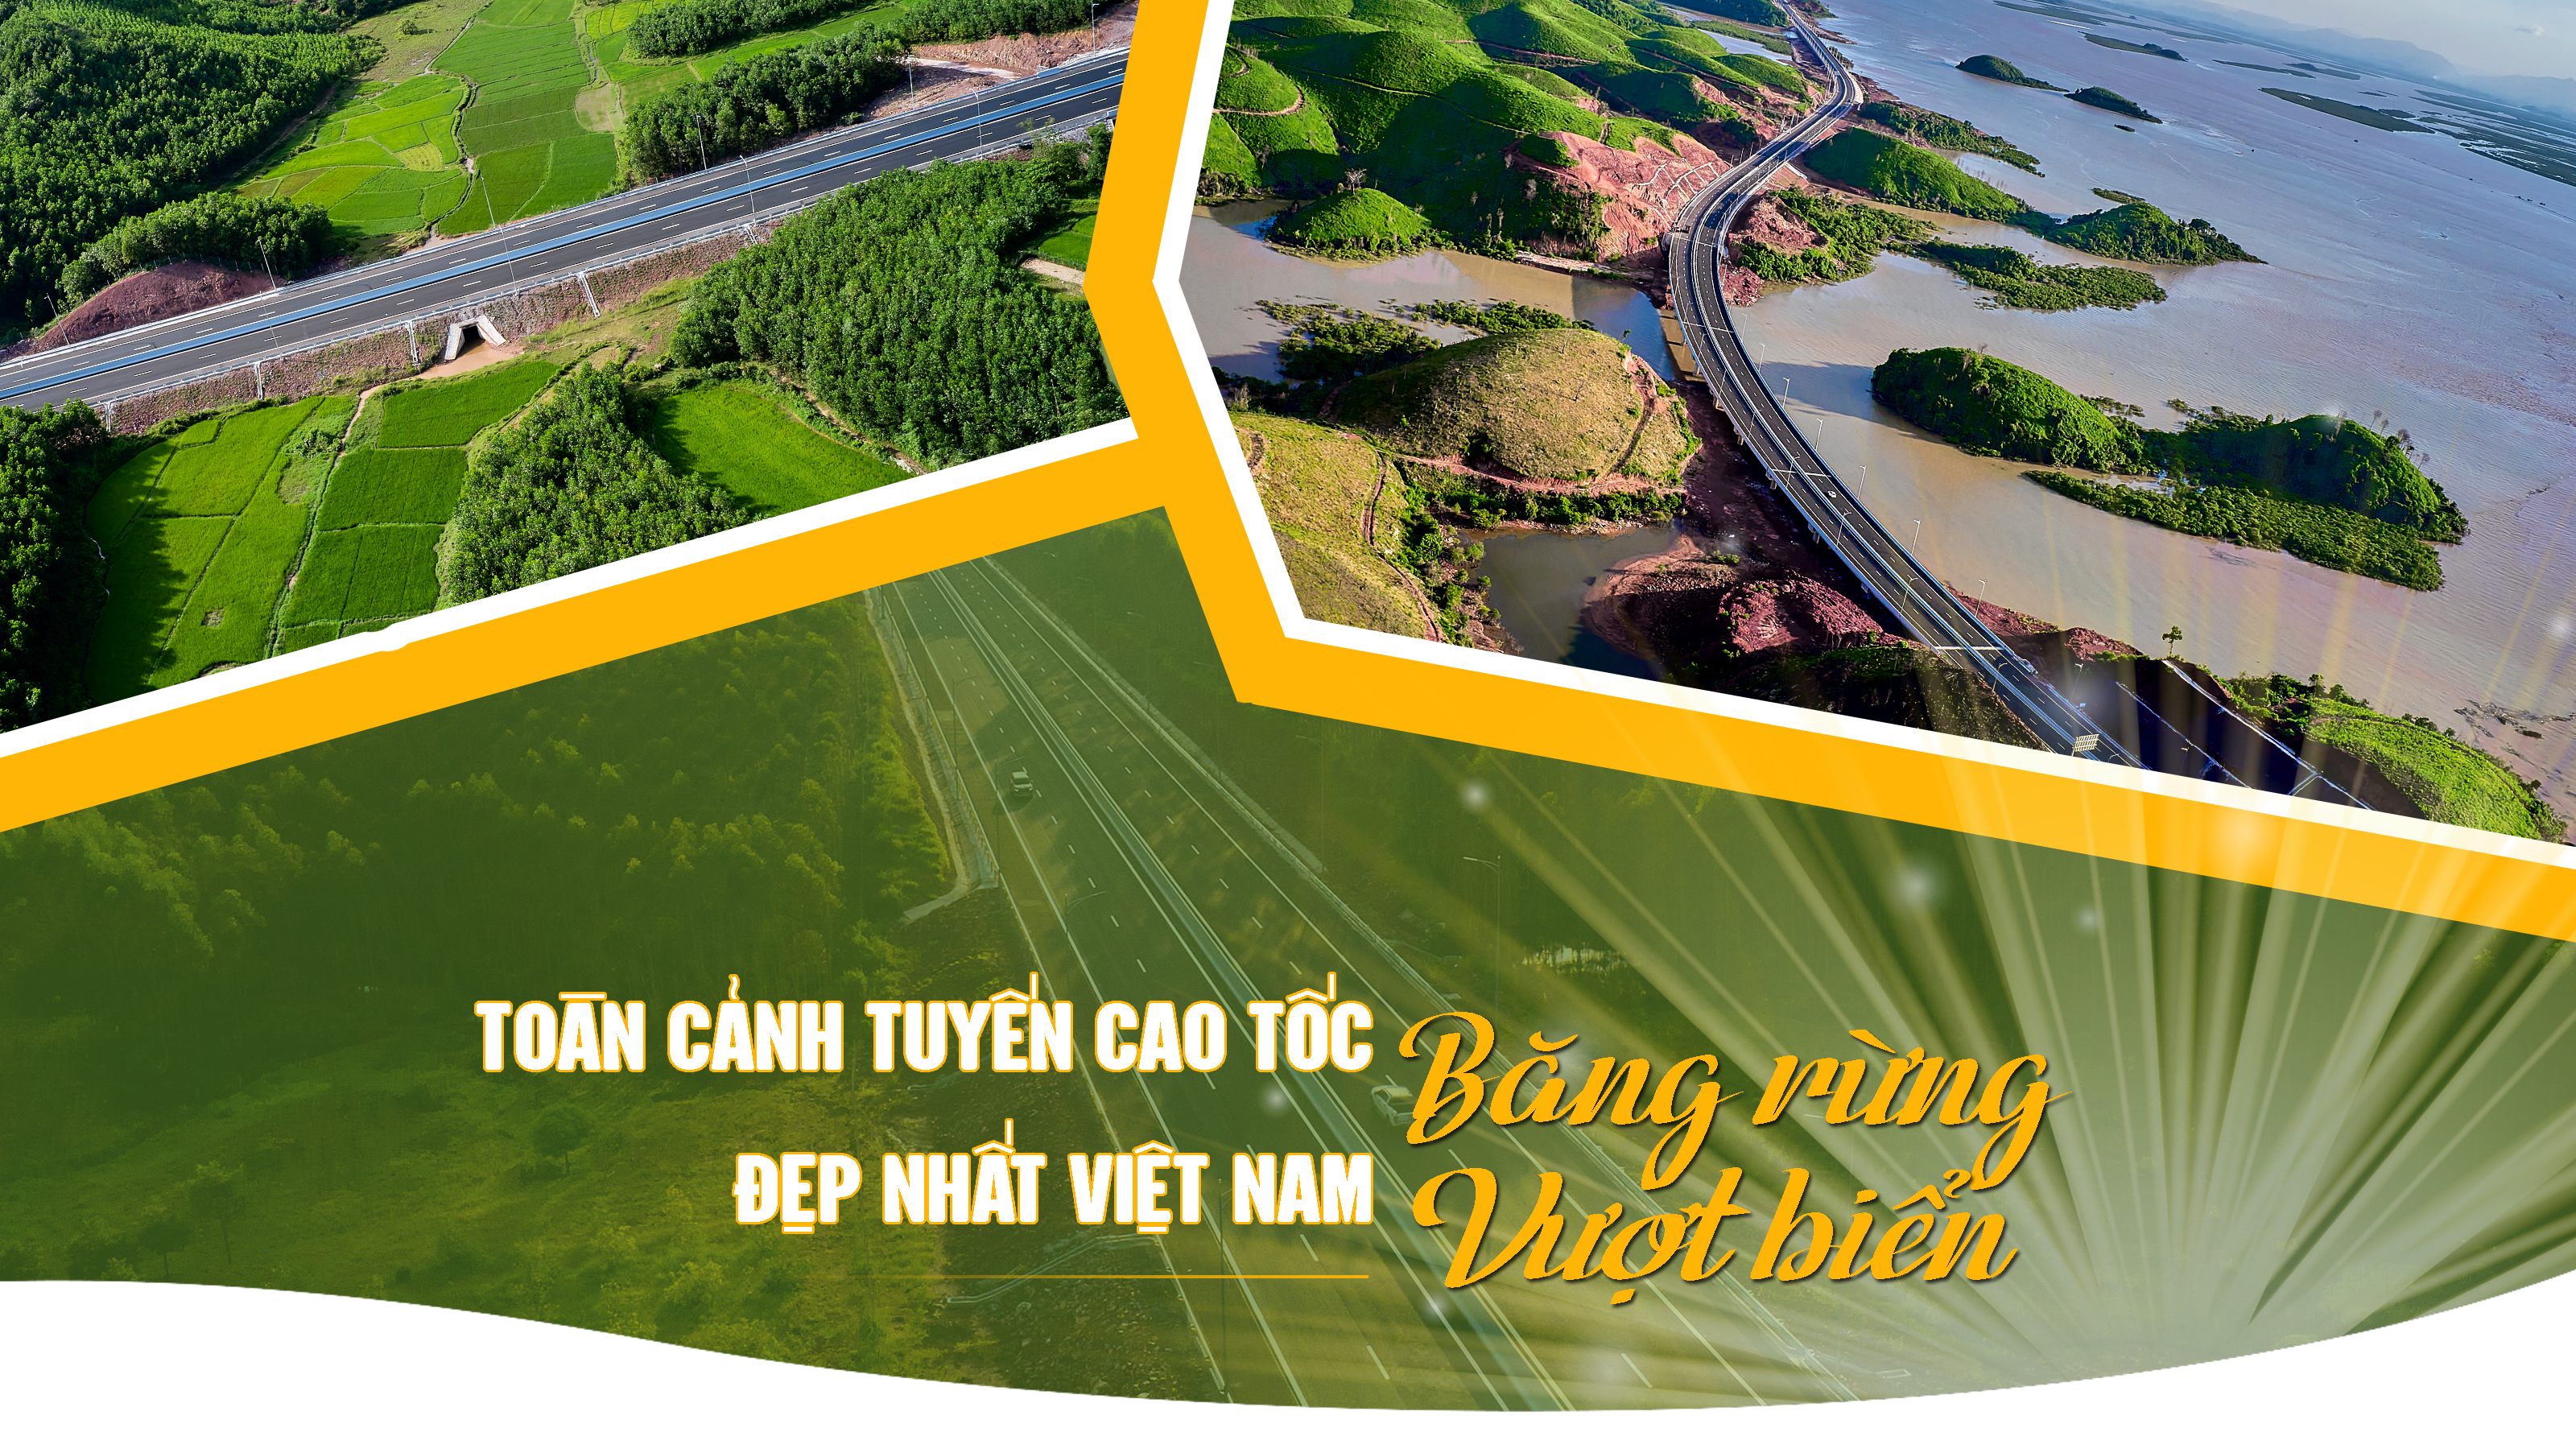 Toàn cảnh tuyến cao tốc băng rừng, vượt biển đẹp nhất Việt Nam